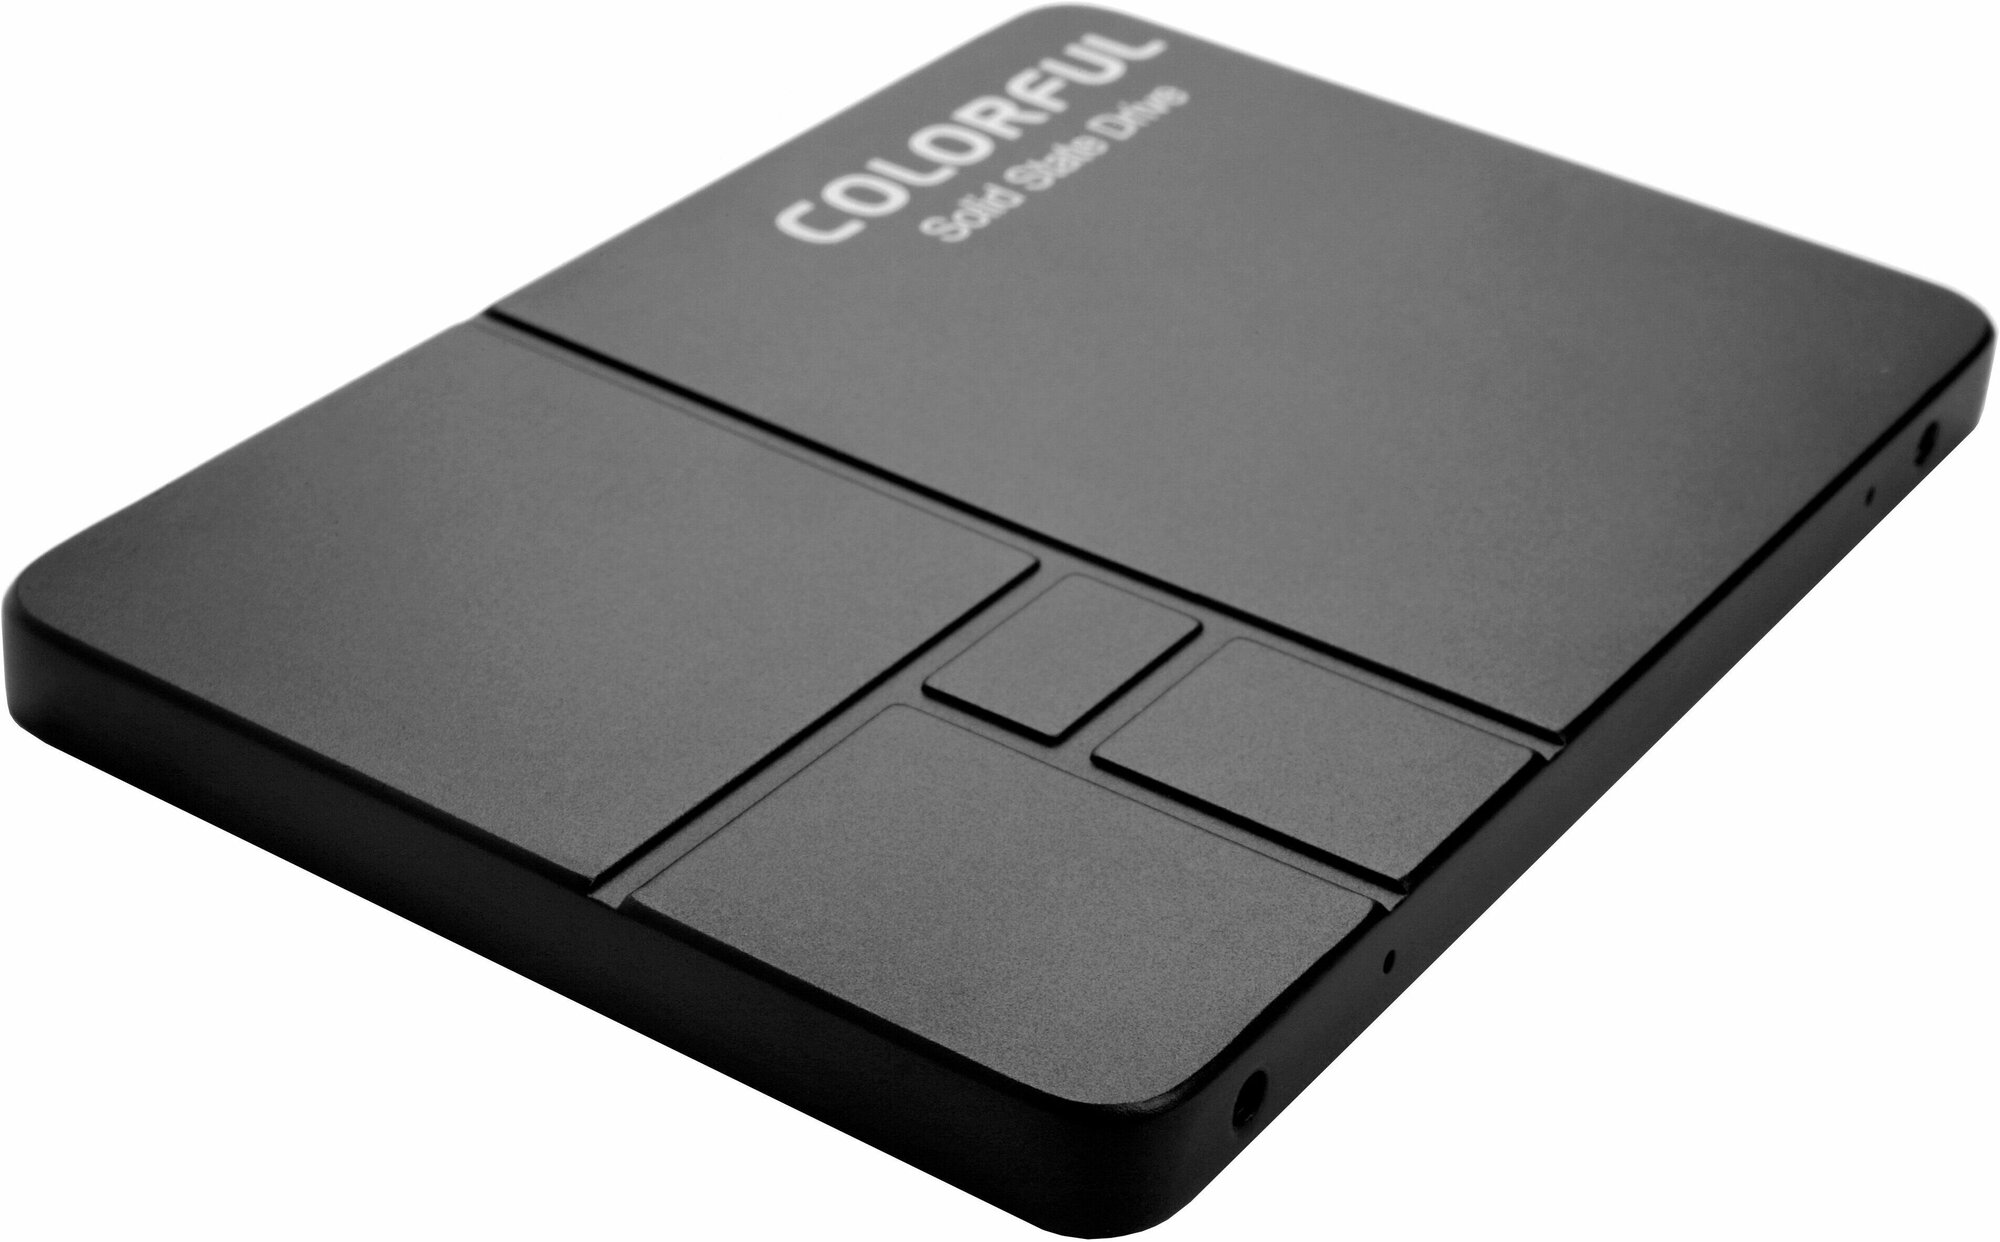 Жесткий диск SSD 2.5" 512GB SATA 6Gb/s, 500/450, 3D NAND, 160TBW, 0,29DWPD, RTL, черный